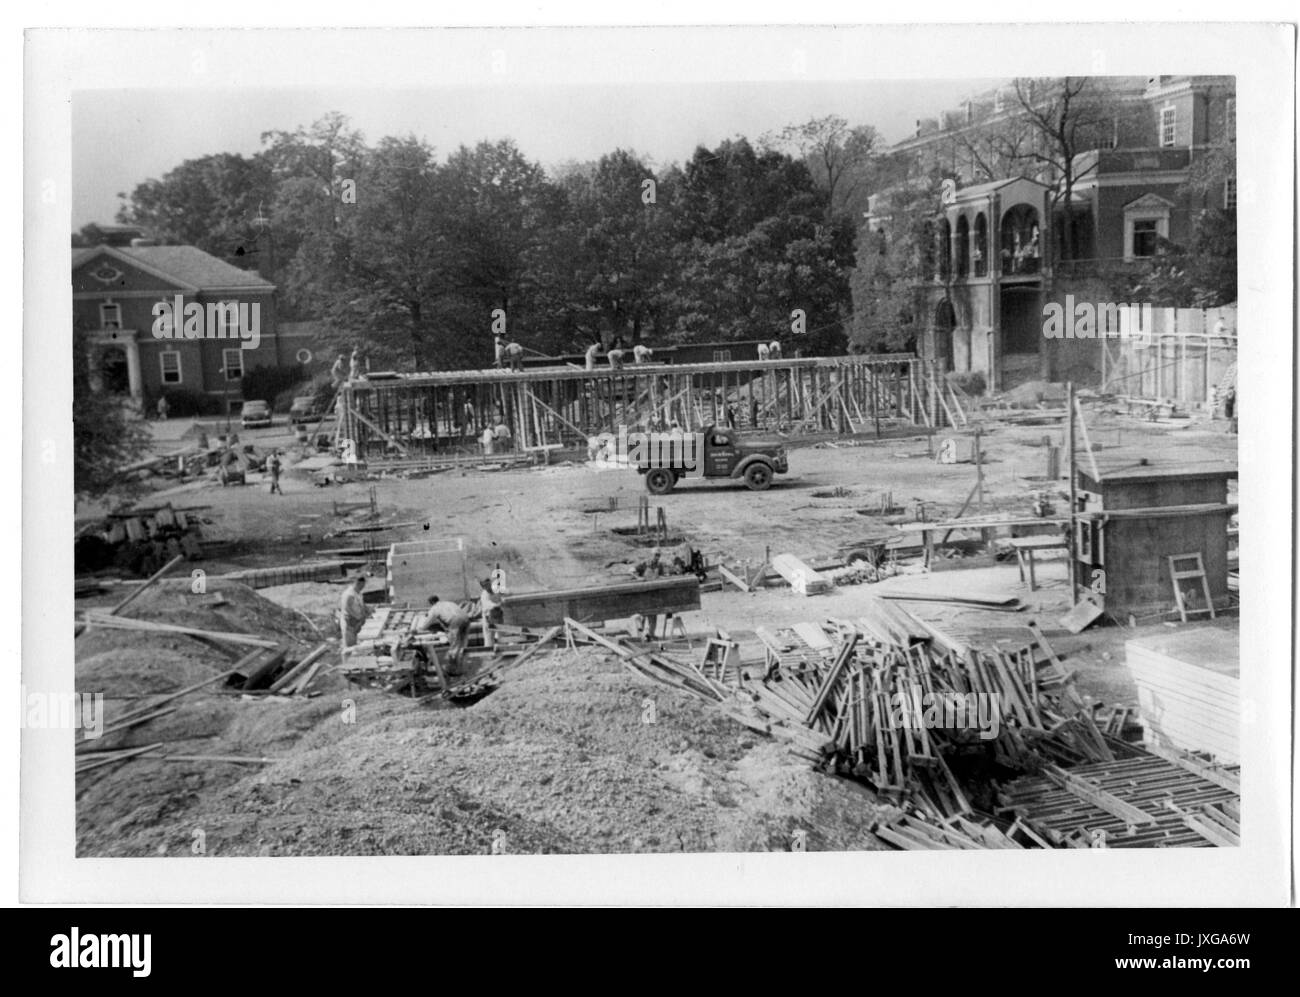 Ames Hall Costruzione di Ames Hall, costruzione è nelle fasi iniziali, 1953. Foto Stock